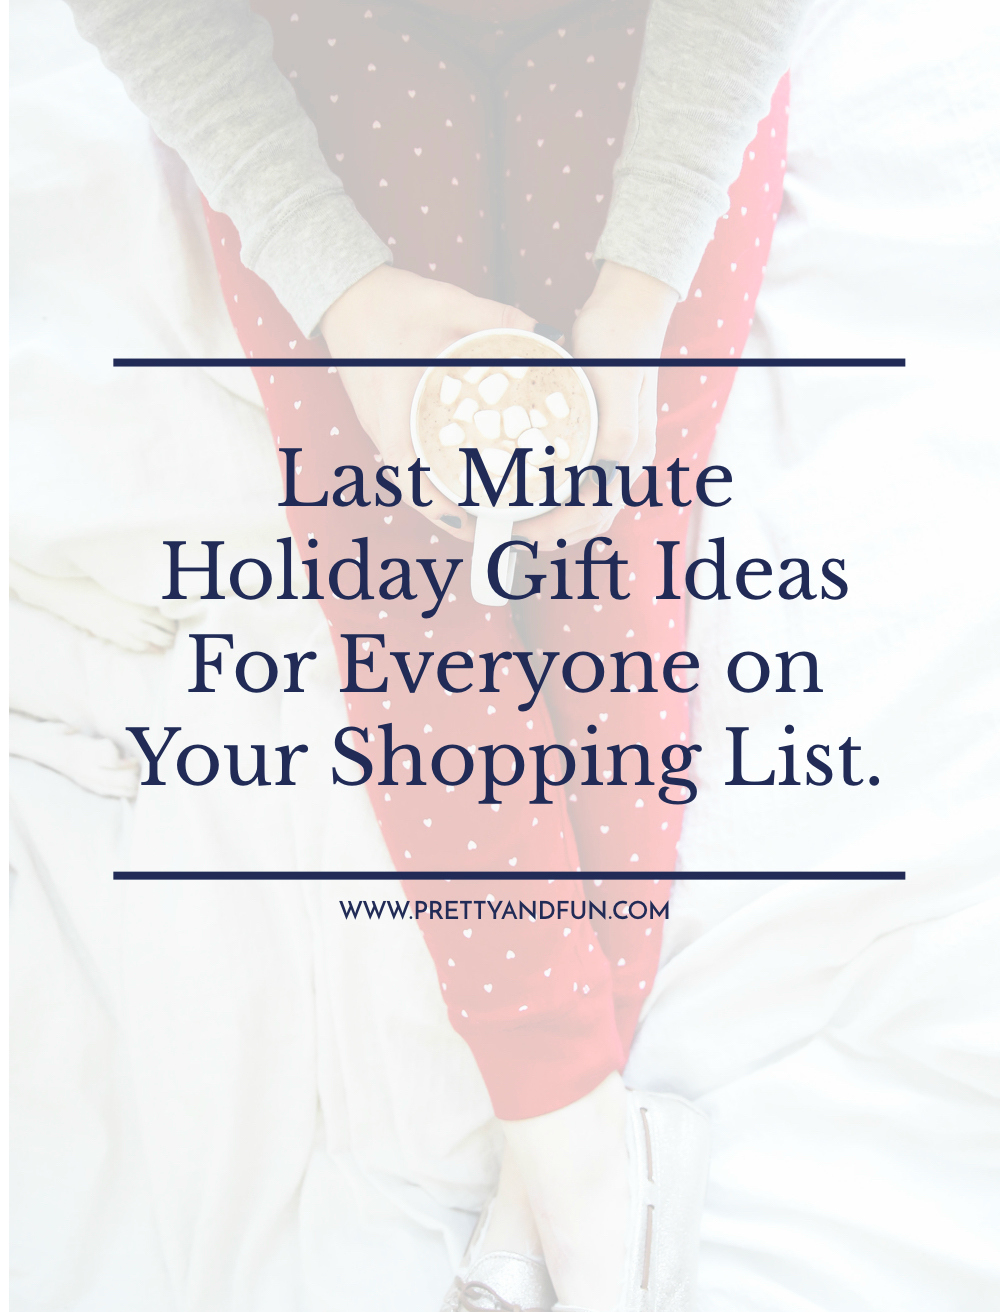 最后一分钟送给购物清单上每个人的礼物。